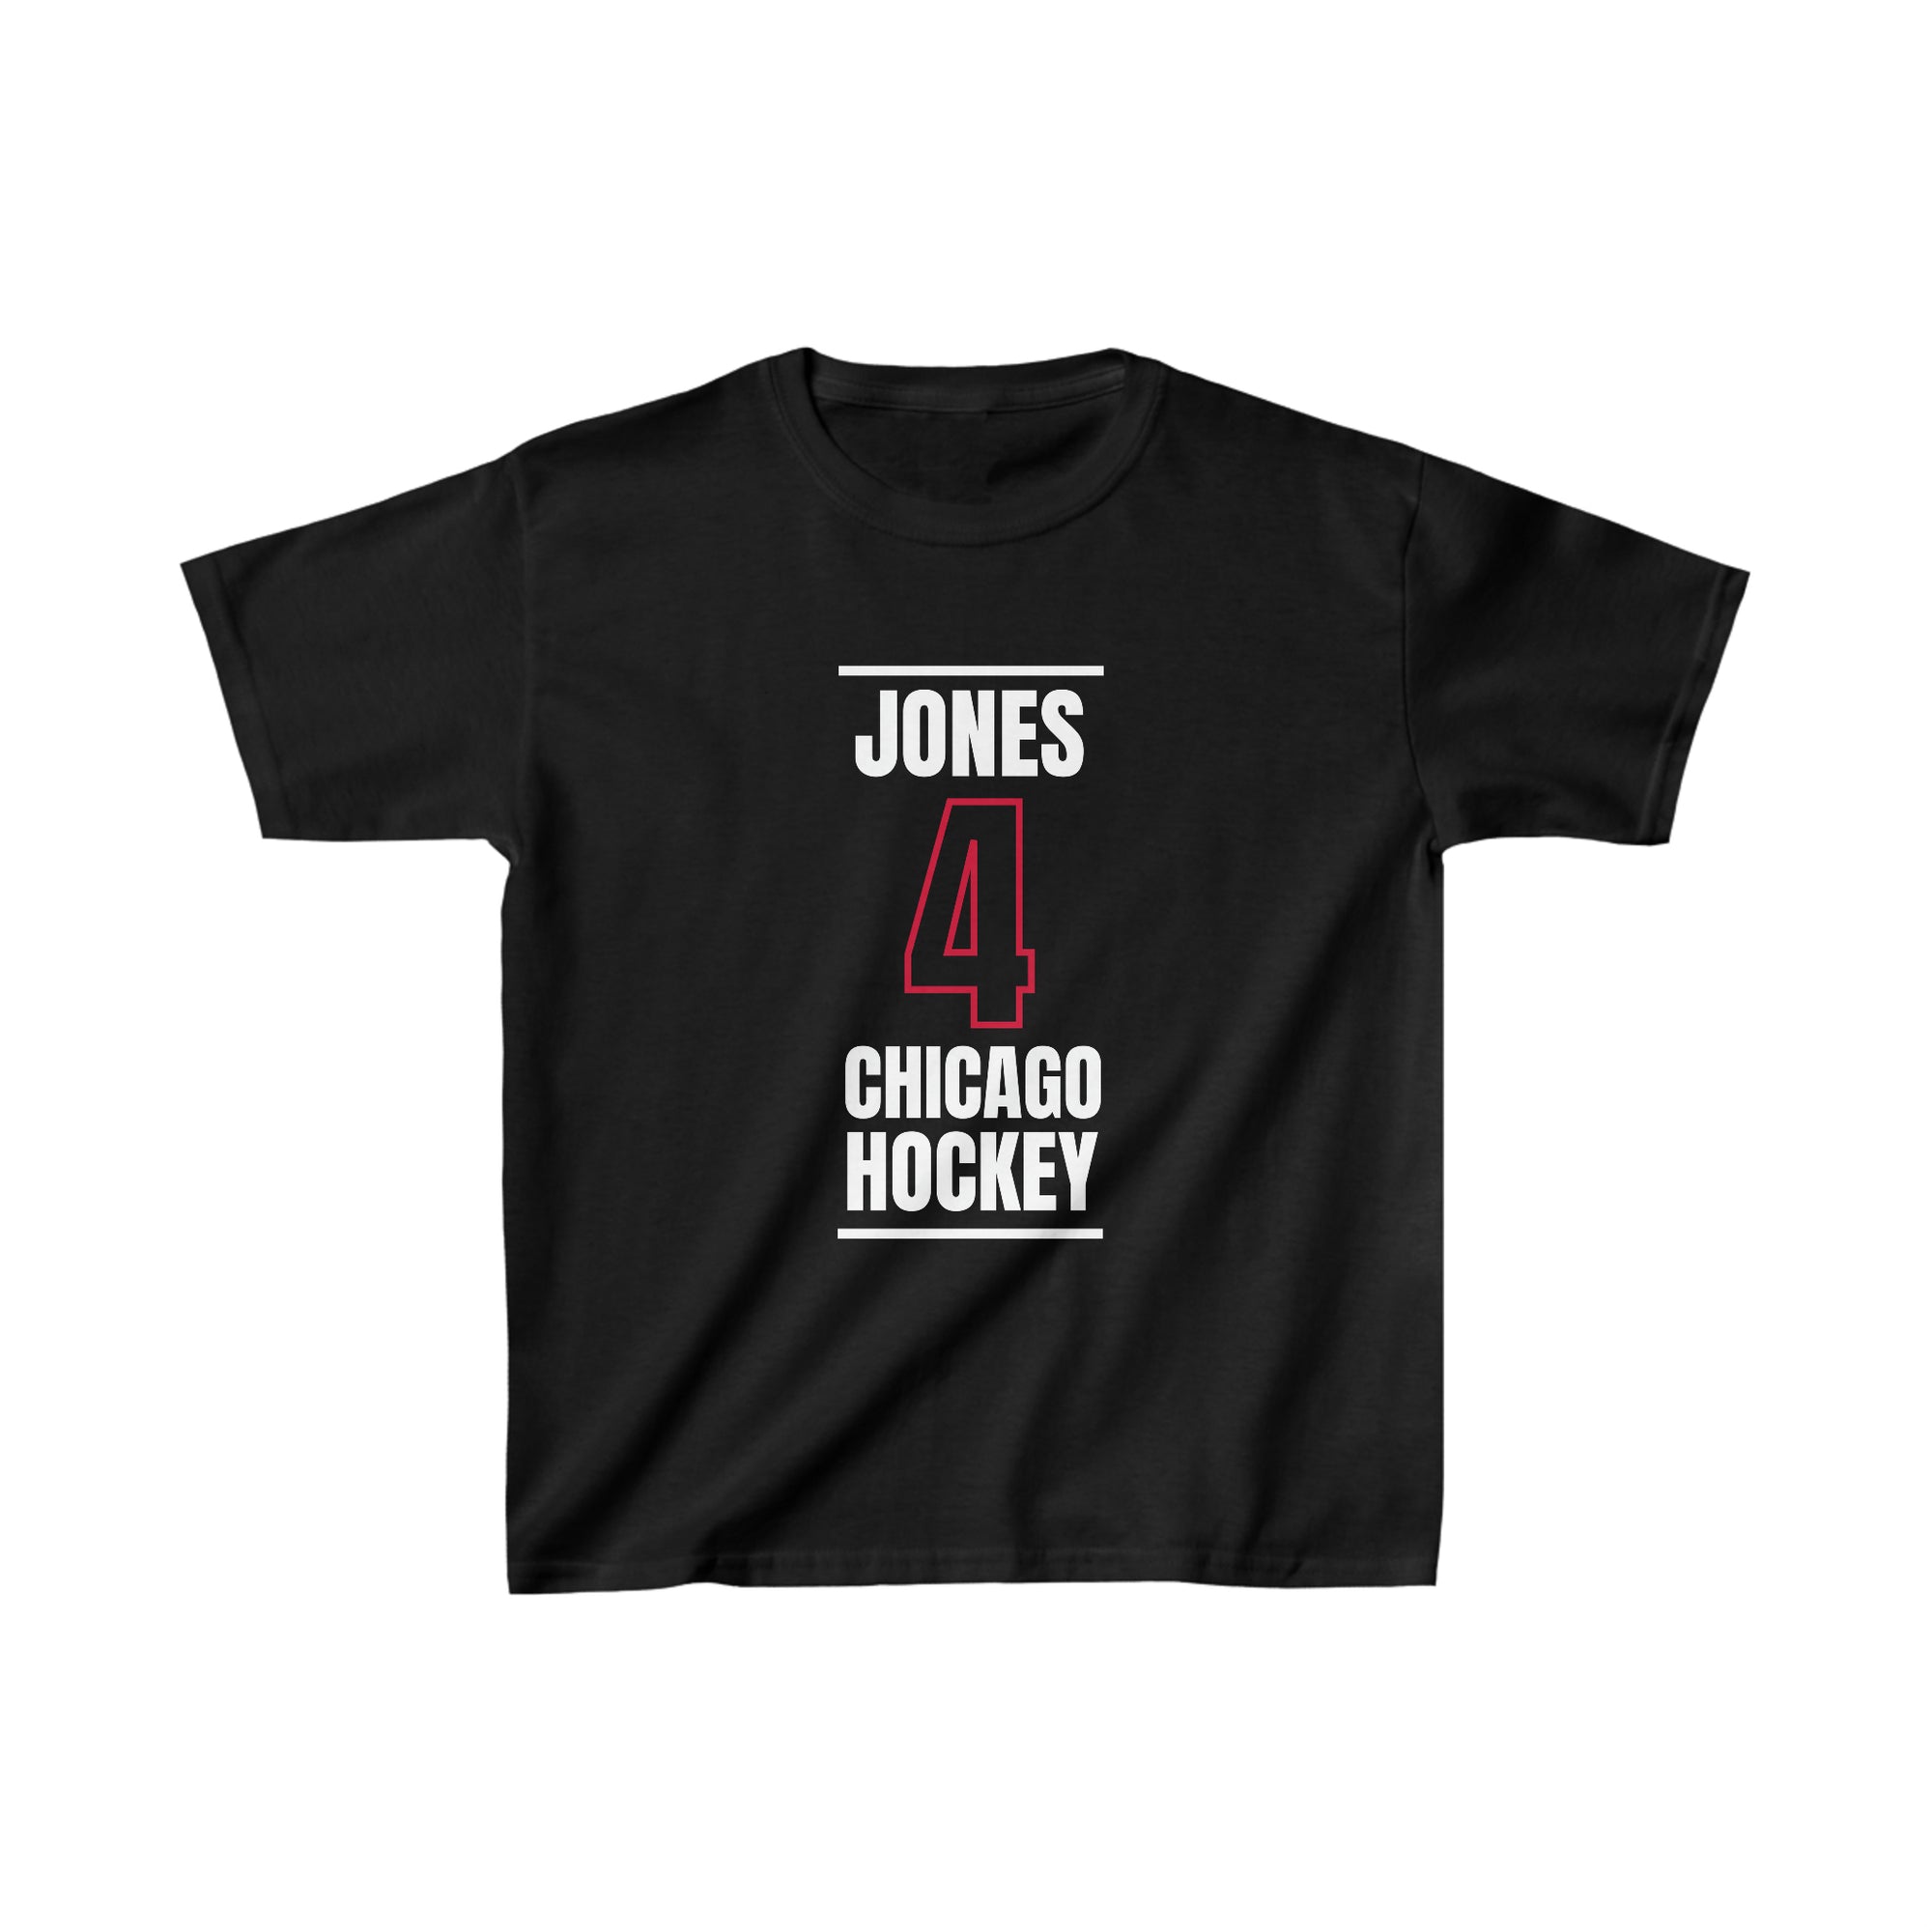 Jones 4 Chicago Hockey Black Vertical Design Kids Tee